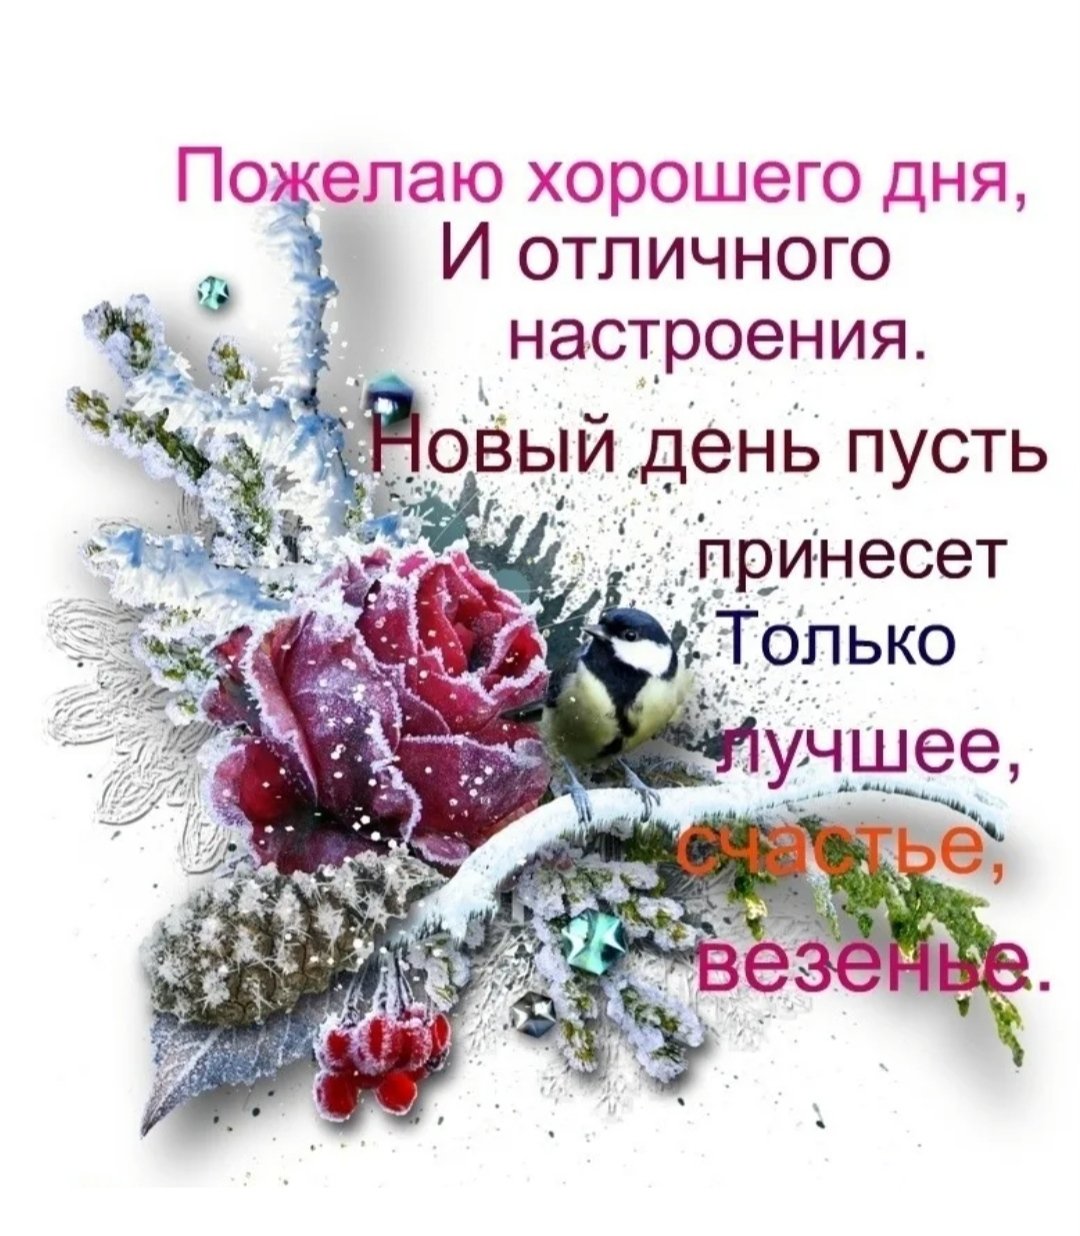 Хорошего дня друзьям зимние. Цветы для хорошего зимнего настроения. Пожелания хорошего зимнего дня и отличного настроения. С добрым зимним днем и отличного настроения. Пожелания доброго зимнего дня.